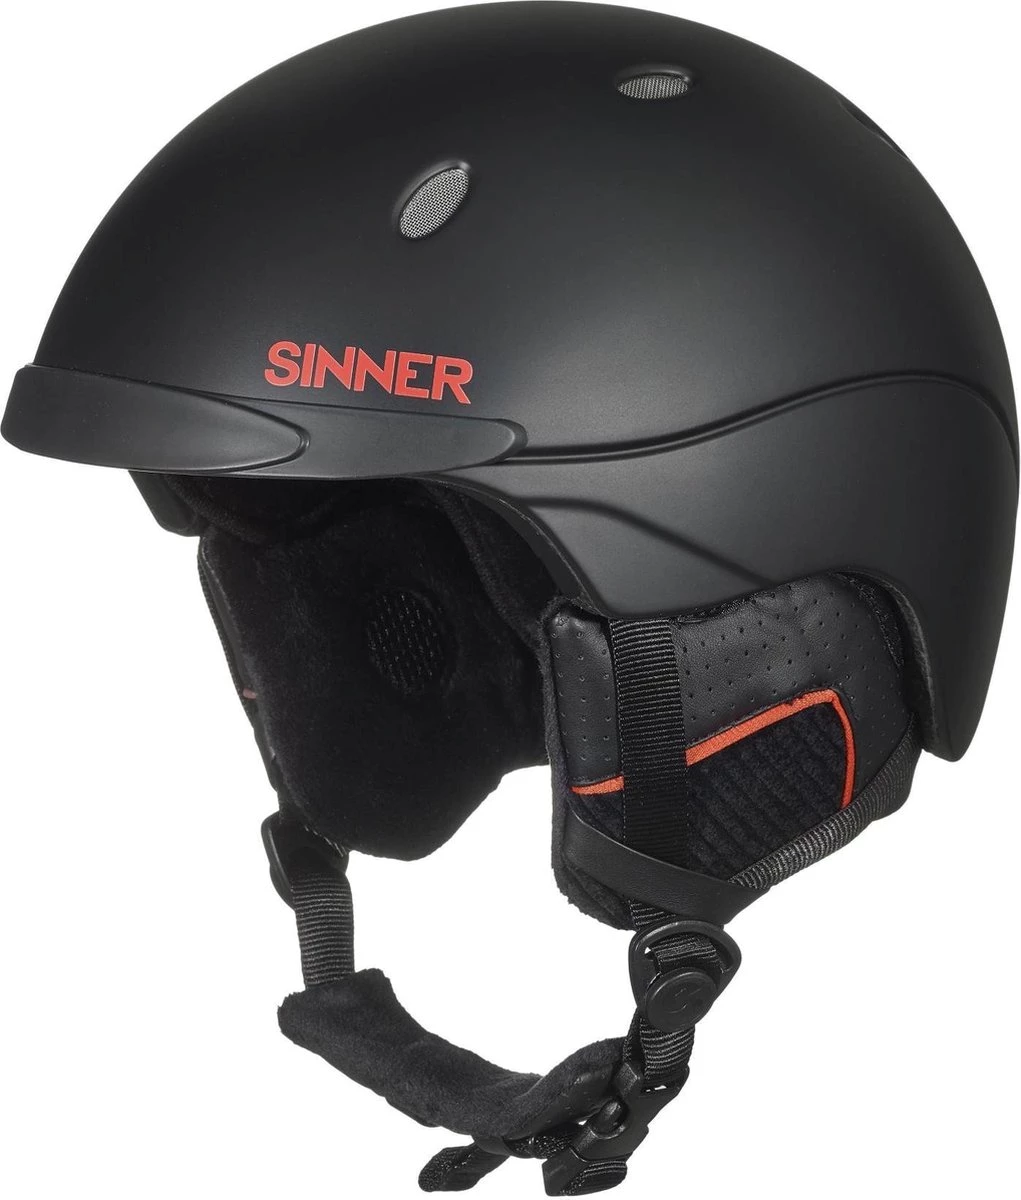 parallel Tram Onderwijs Sinner Titan 52 / 55 / 59 / 63 ski helm zwart van snowboard helmen